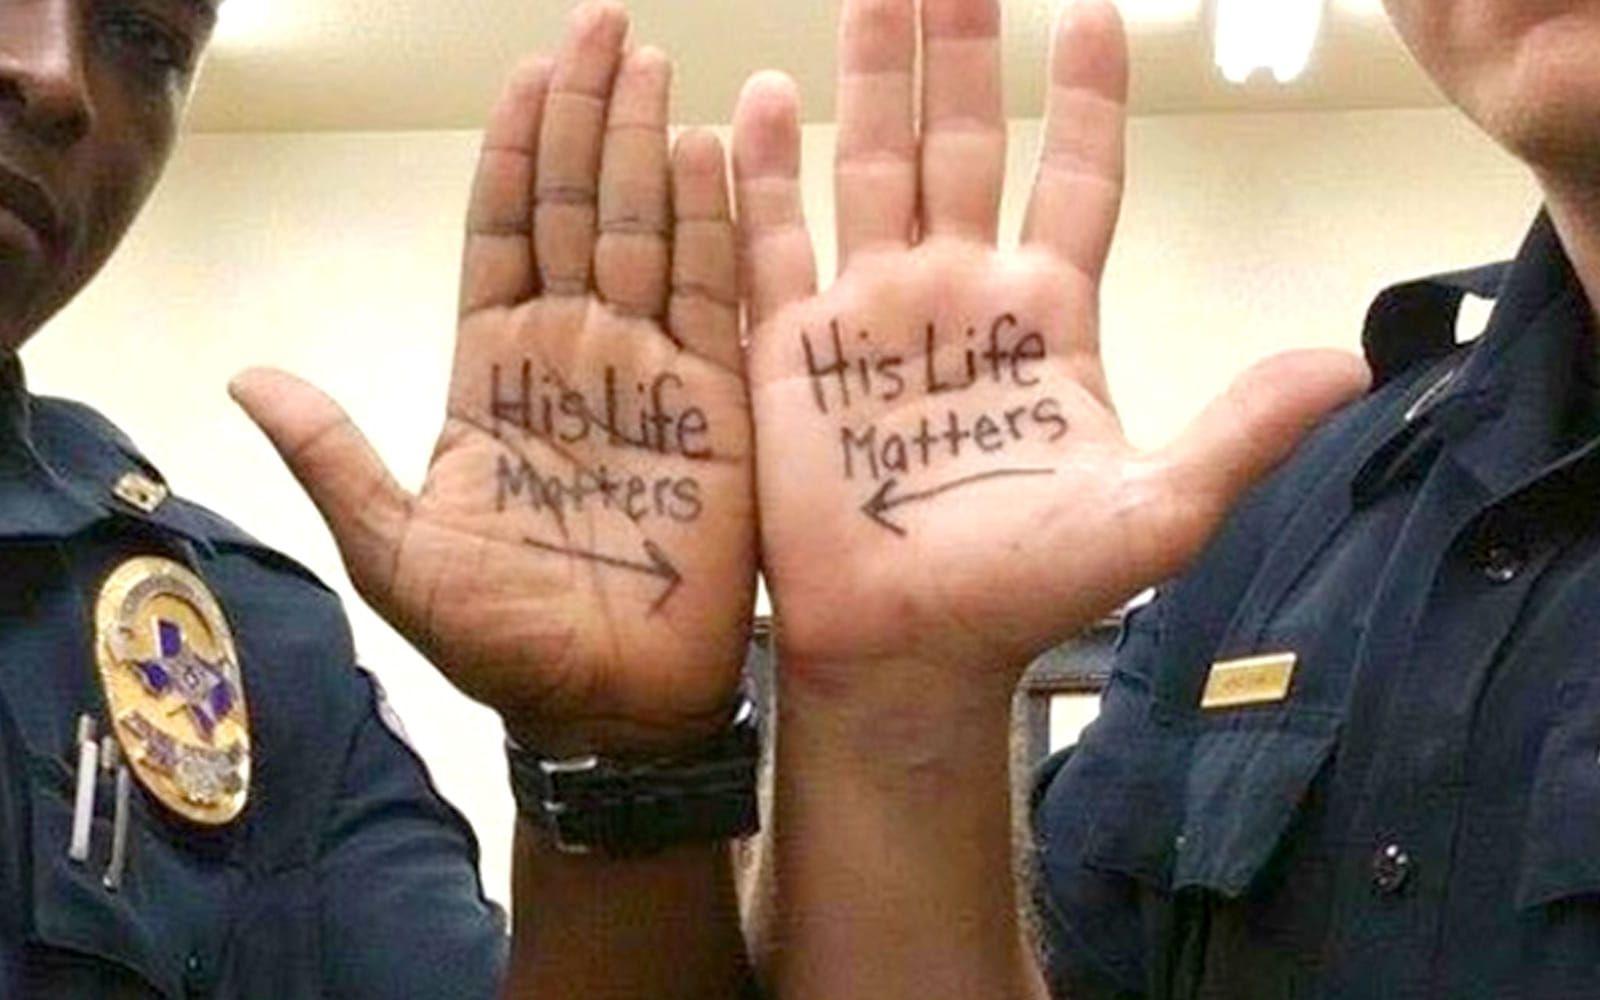 Klicka vidare för att se hur Black Lives Matter-anhängare svarar All Live Matter.